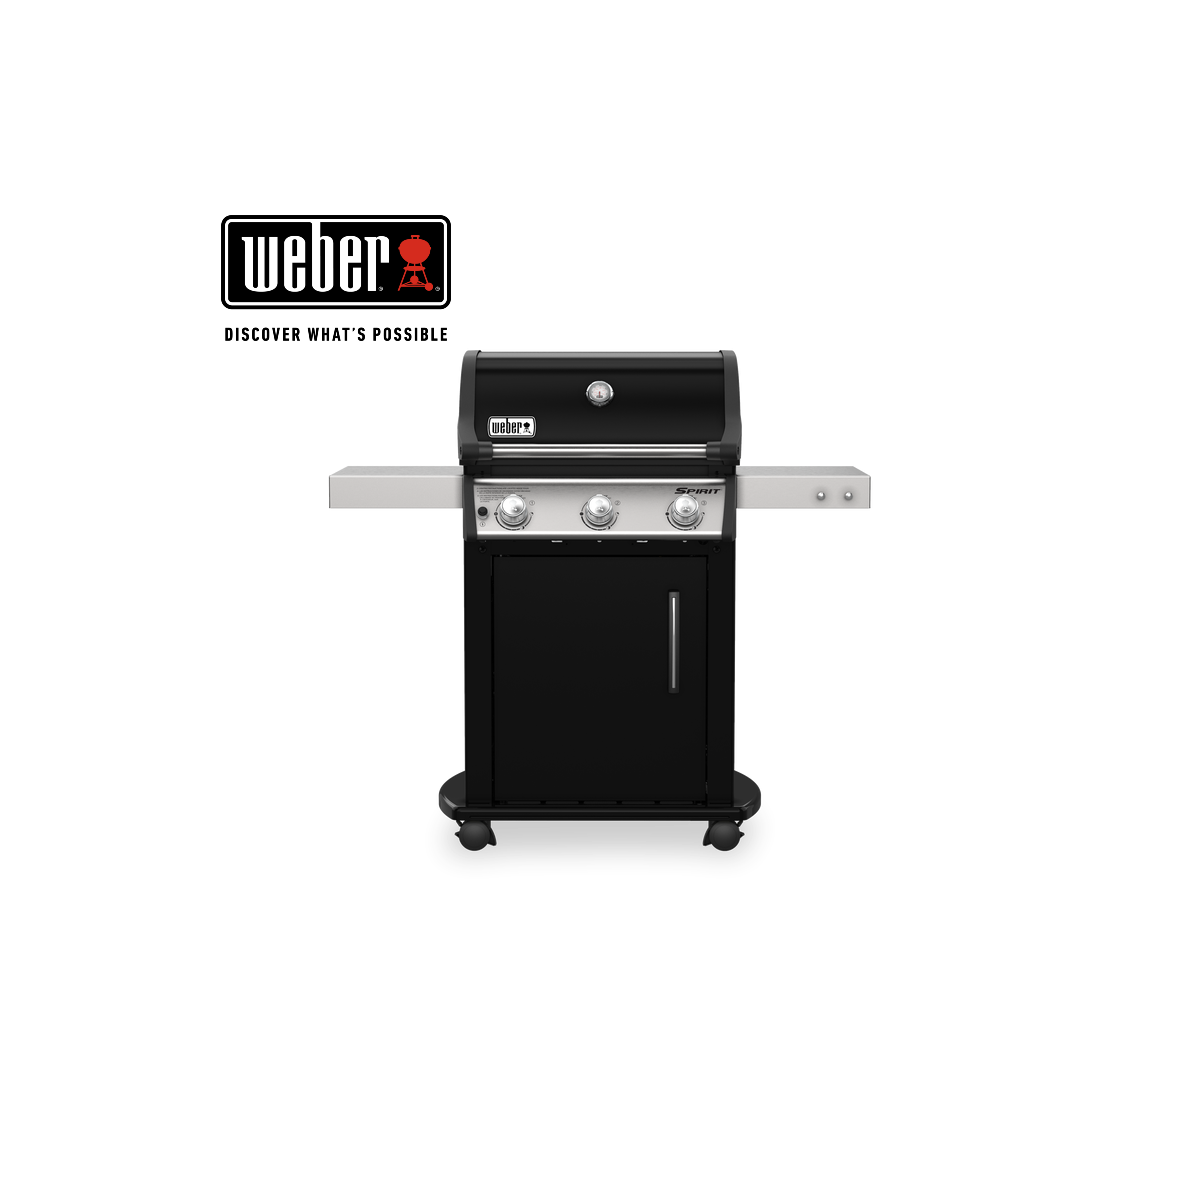 WEBER gas grill SPIRIT E-315 GBS, 46512269